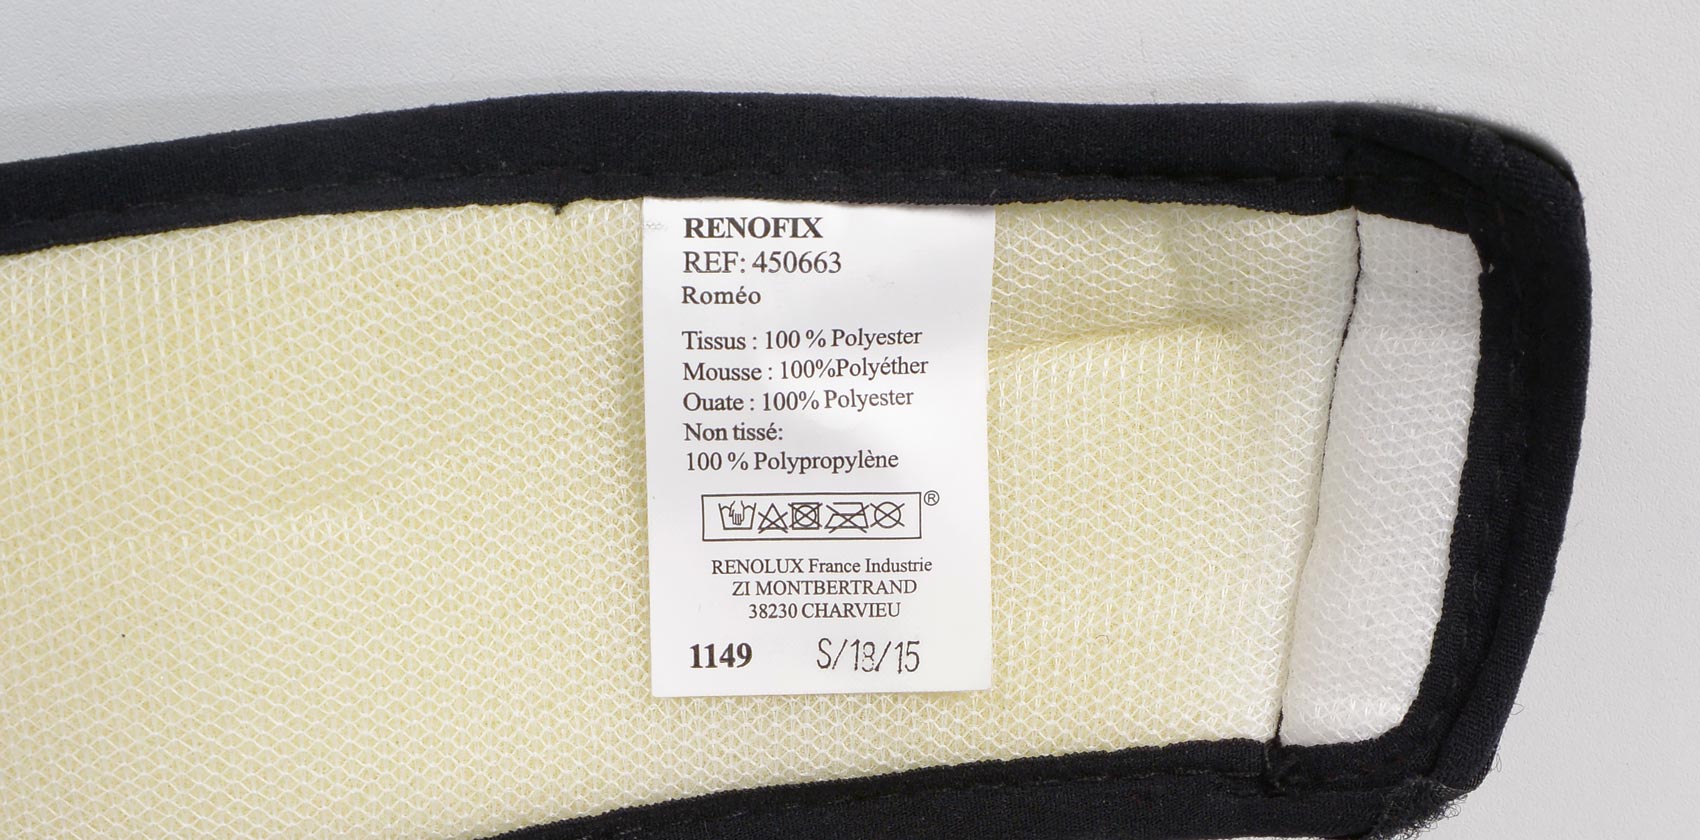 Renolux Renofix состав ткани